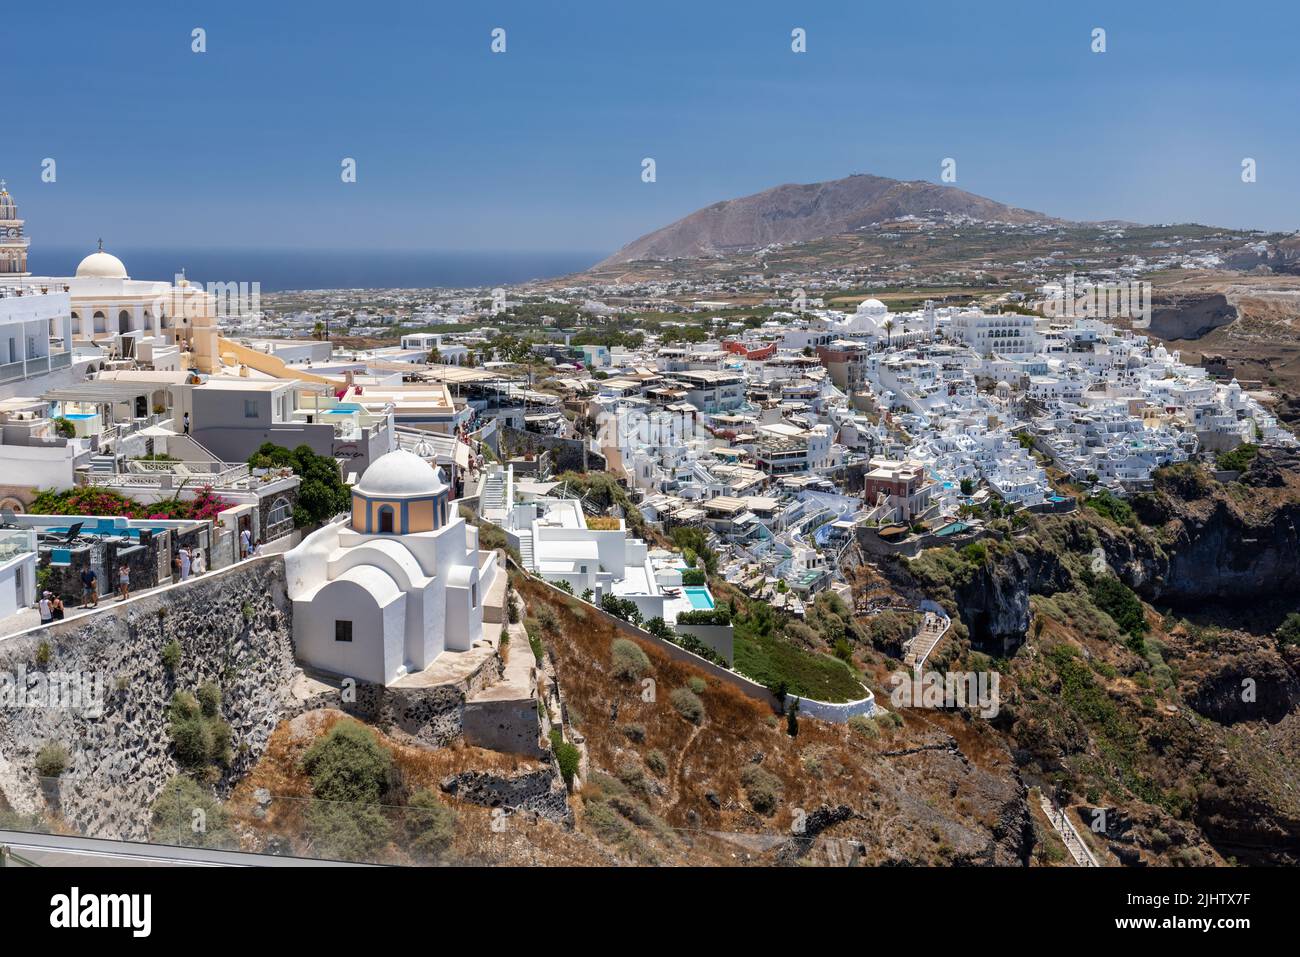 Vista della capitale Fira con la Chiesa cattolica di San Stylianos sul sentiero della Caldera, Thira, Santorini, isole Cicladi, Grecia, Europa Foto Stock